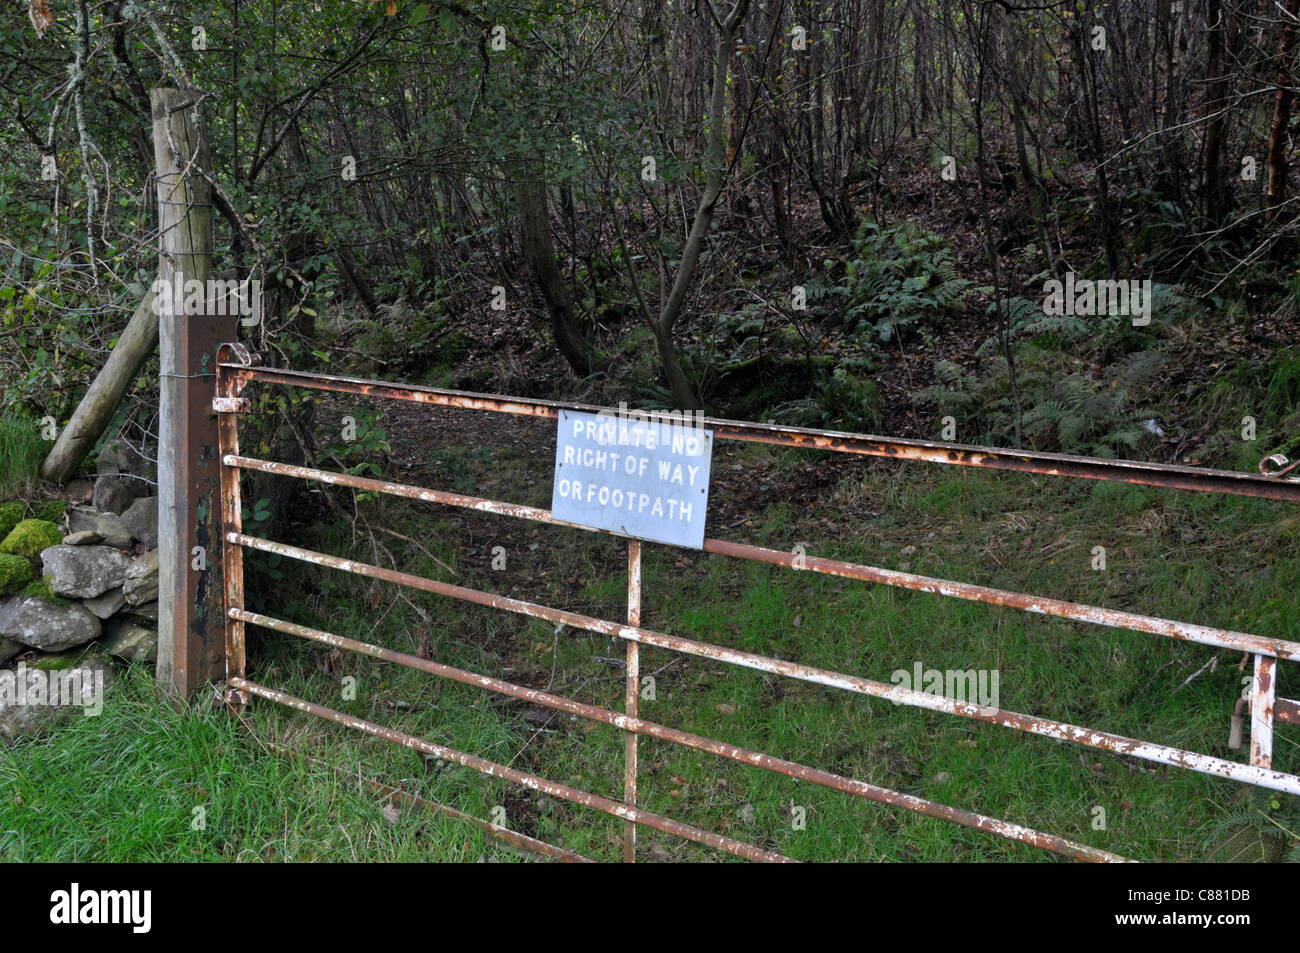 Privato, nessun diritto di modo segno, Parco Nazionale di Snowdonia, Wales, Regno Unito Foto Stock